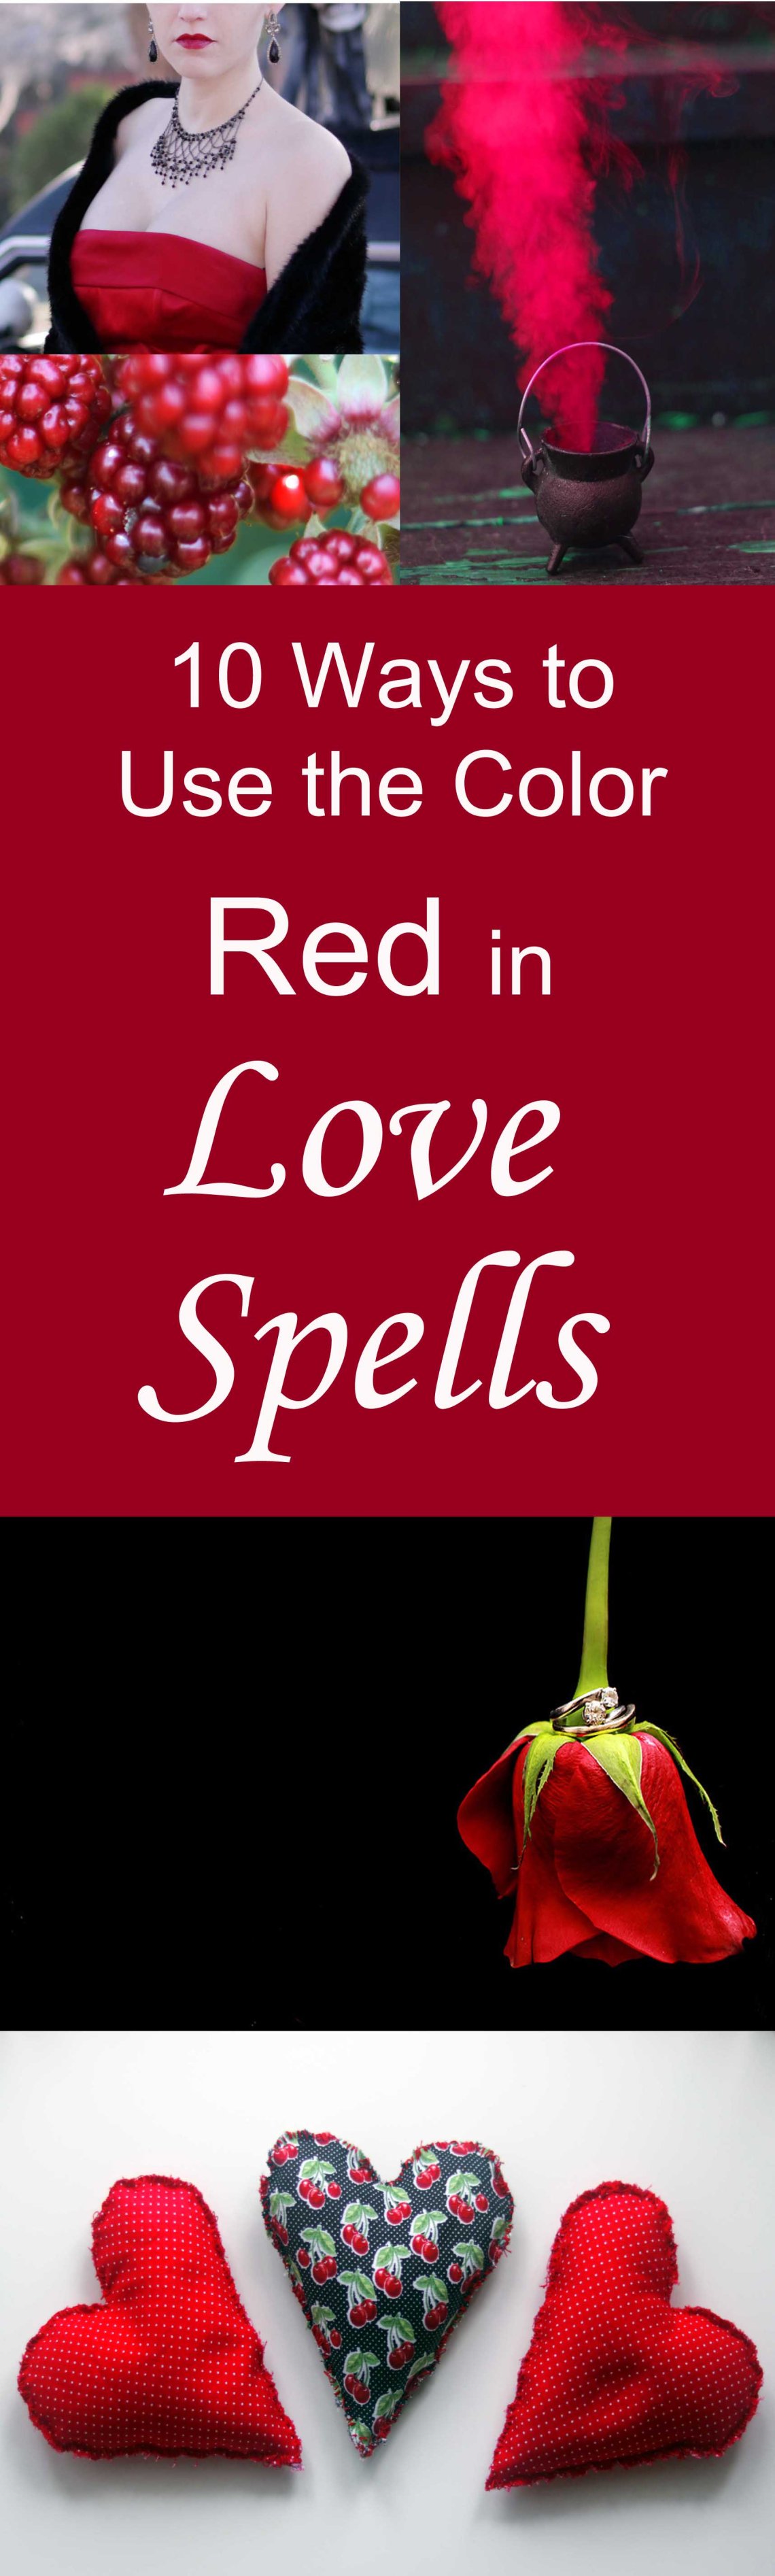 10 Maneras de Usar el Color Rojo en Hechizos de Amor y Magia de Atracción